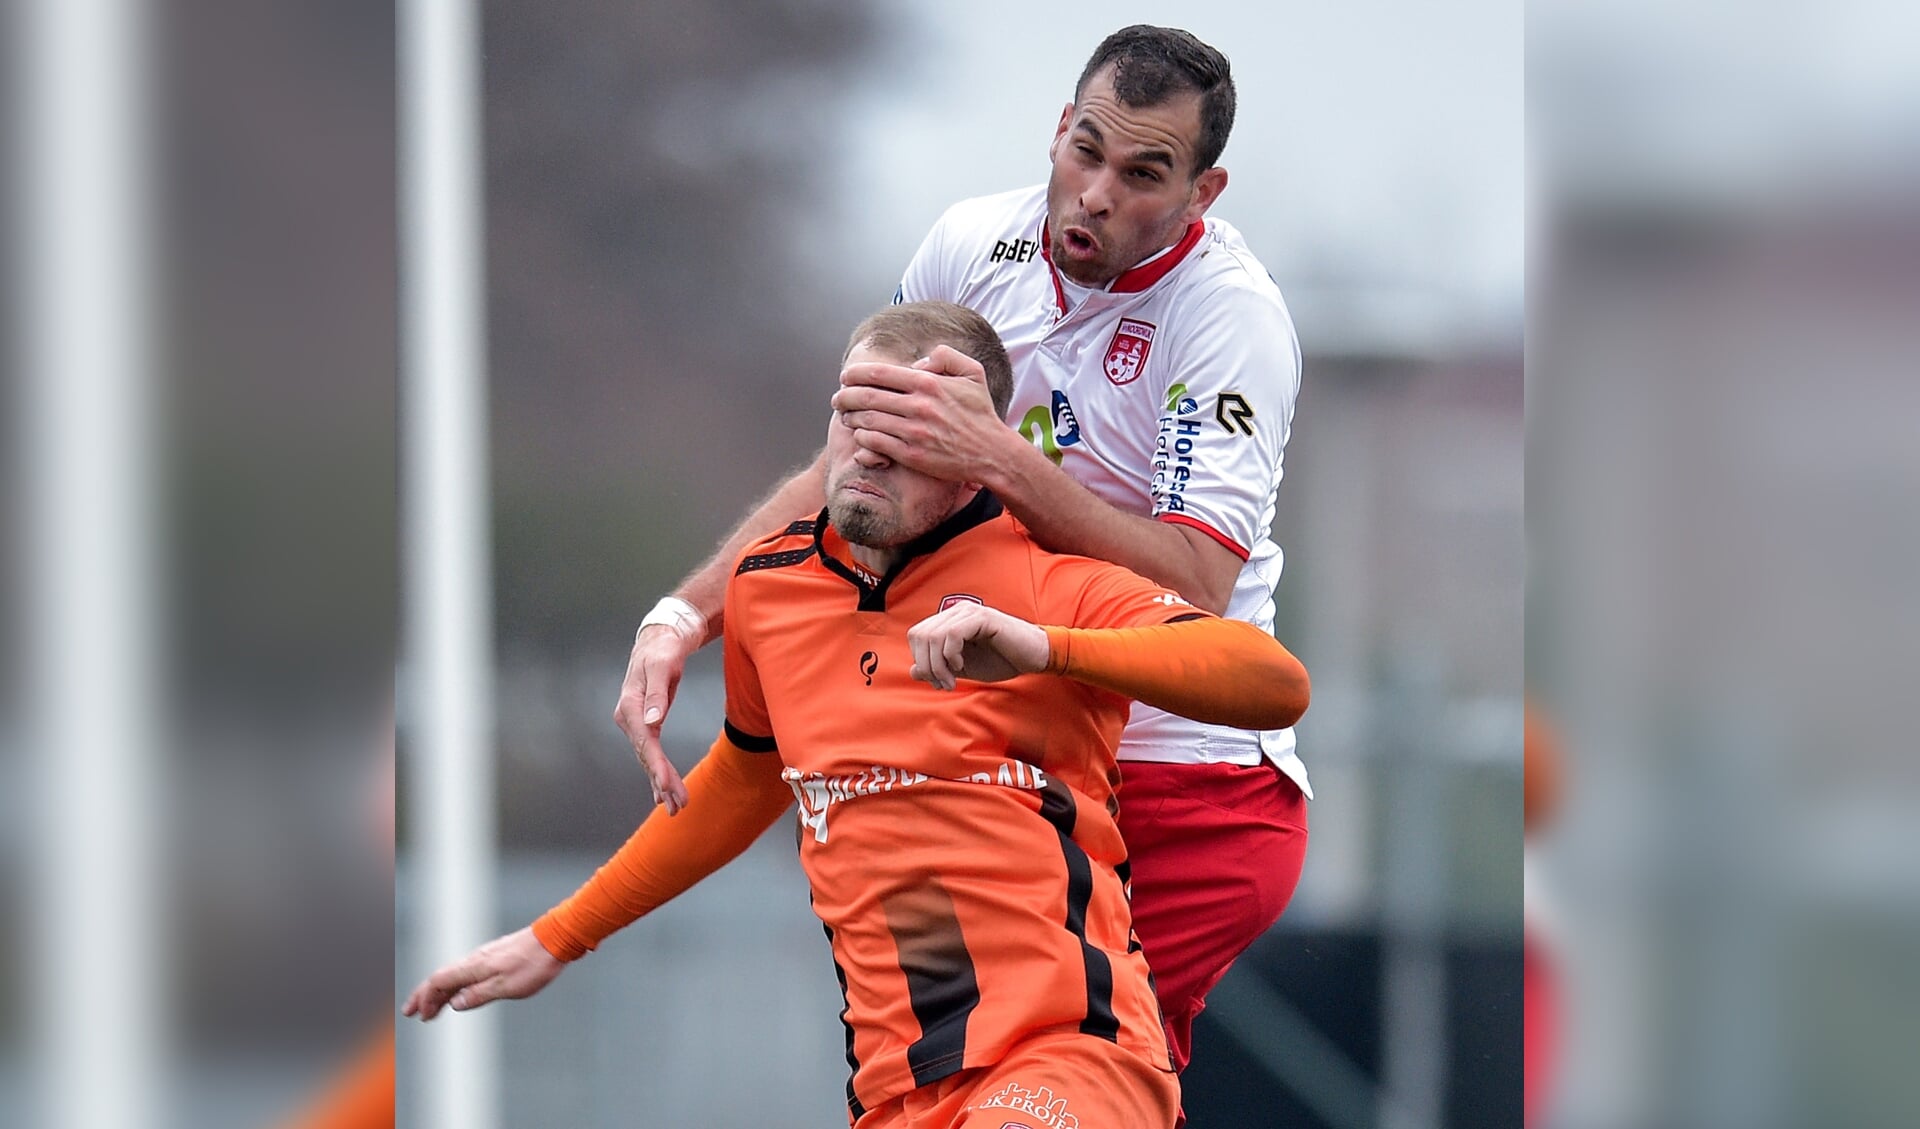 Bryan Jongeneel van Stedoco heeft ruzie met Brayen Bröcker. | Foto: OrangePictures